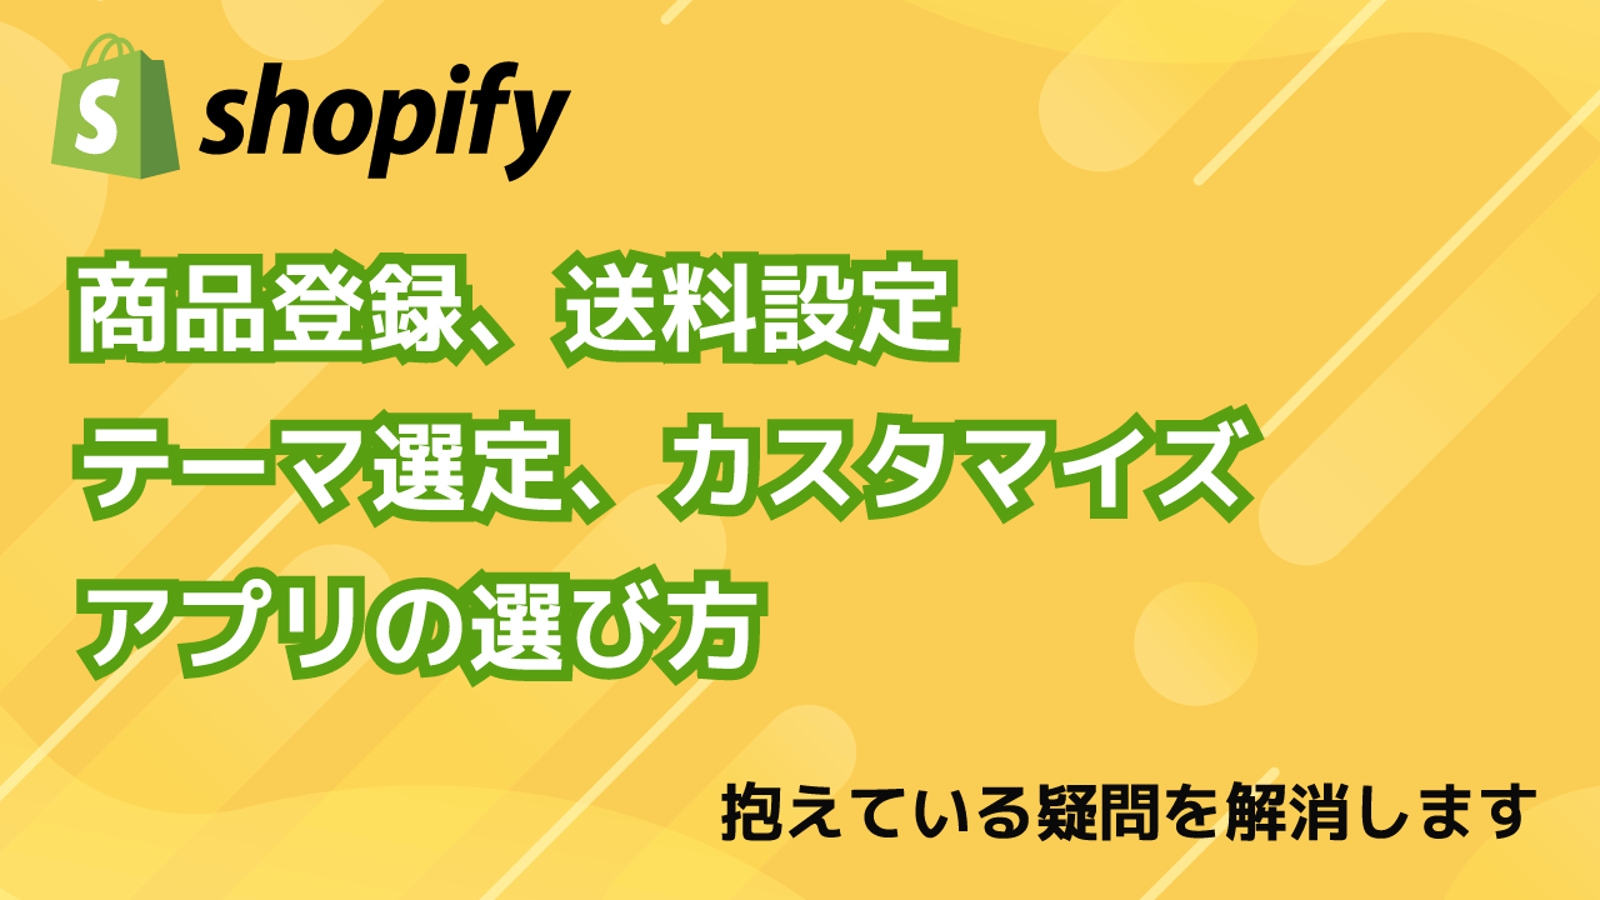 Shopify操作完全マスター-image1